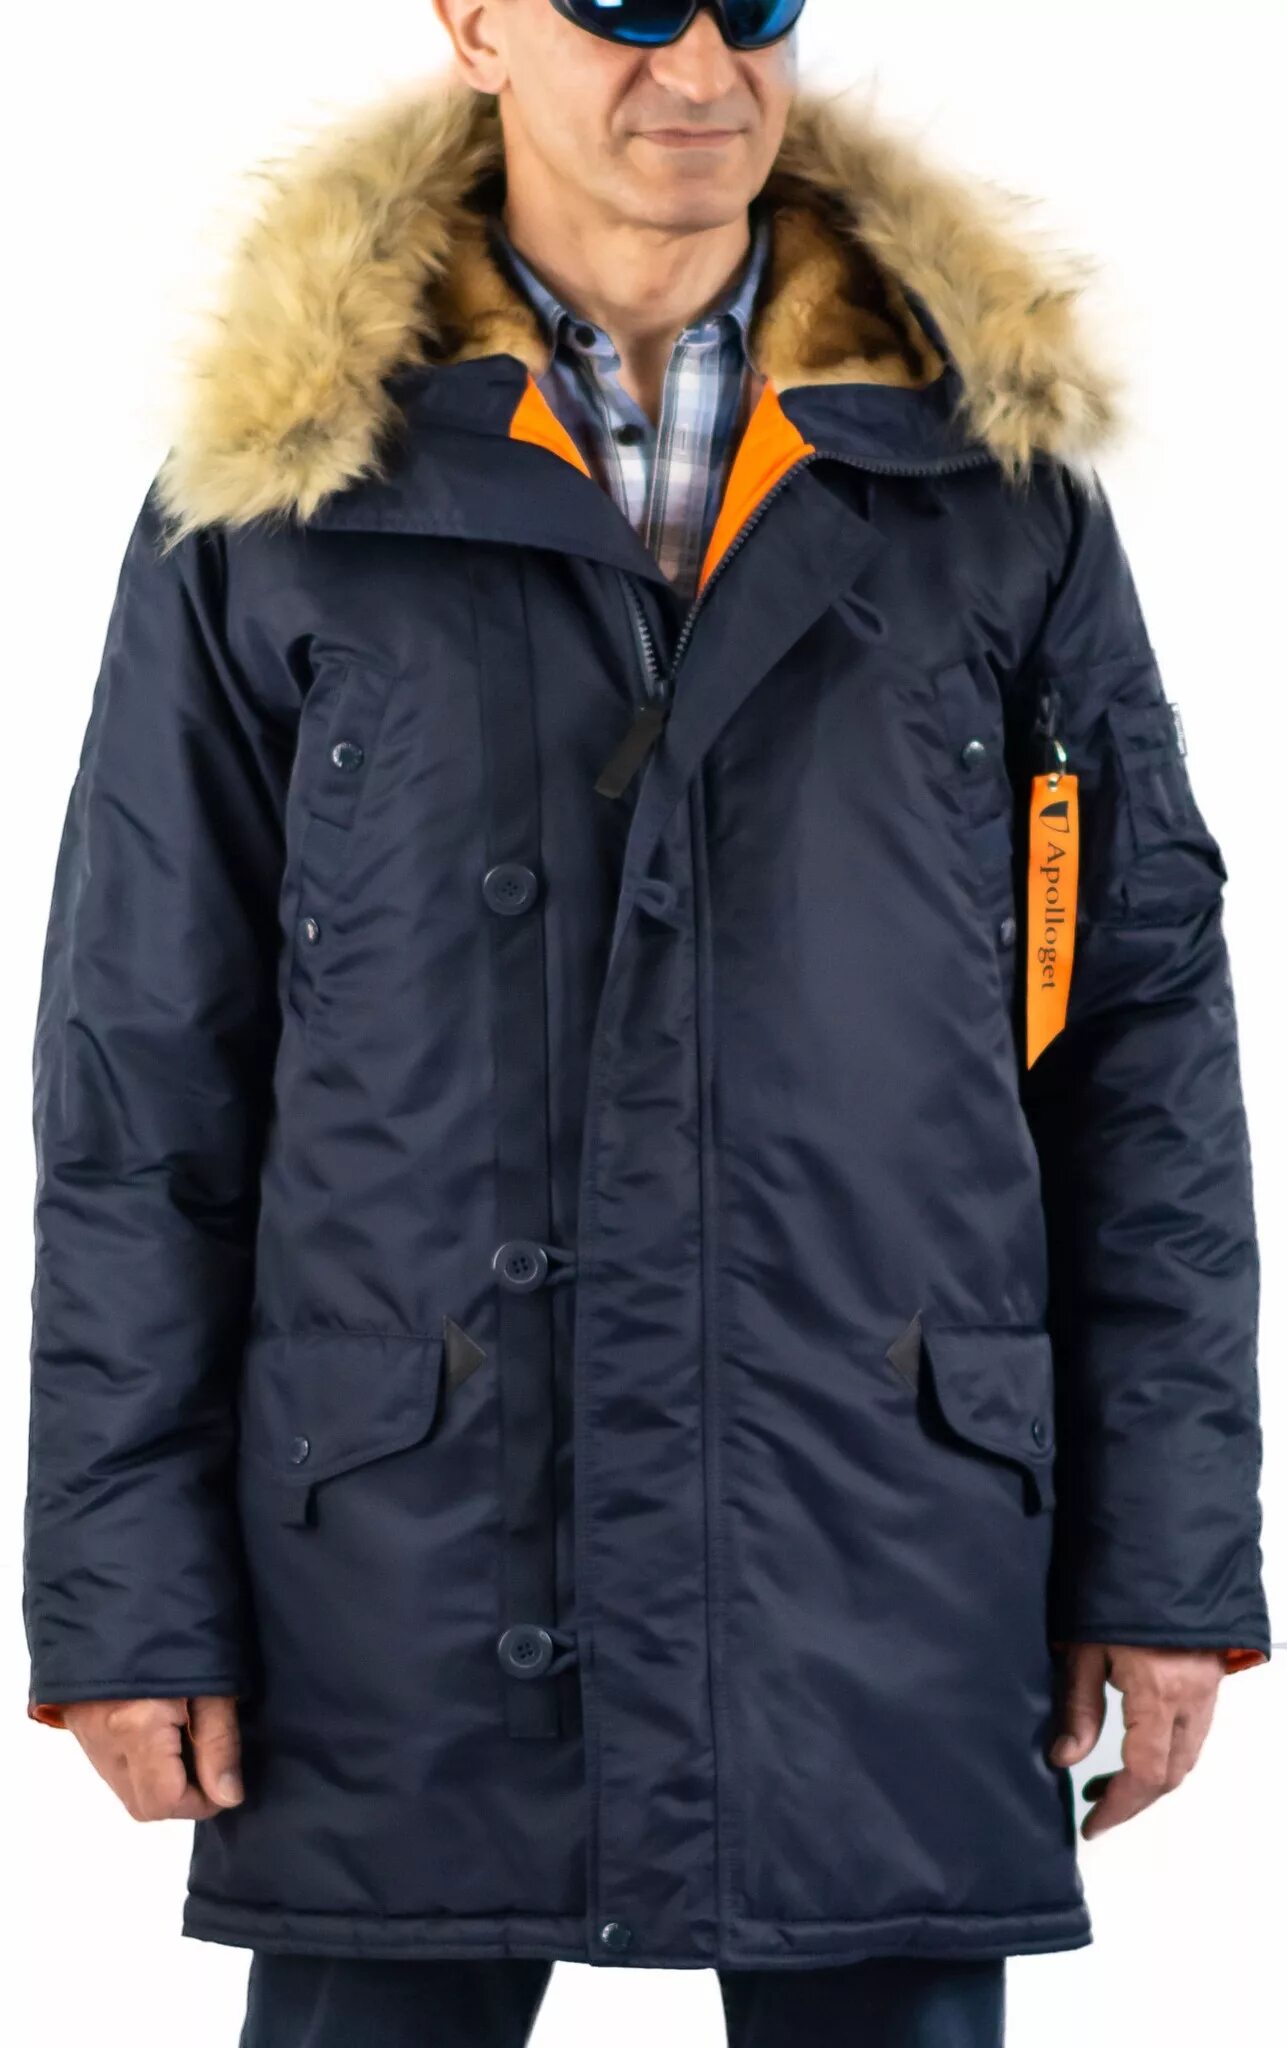 Куртка Аляска Husky long Olive/Orange Apolloget. Аляска зимняя мужская куртка 8xl. Зимняя куртка Аляска Airboss Parka. Аляска Husky Apolloget.